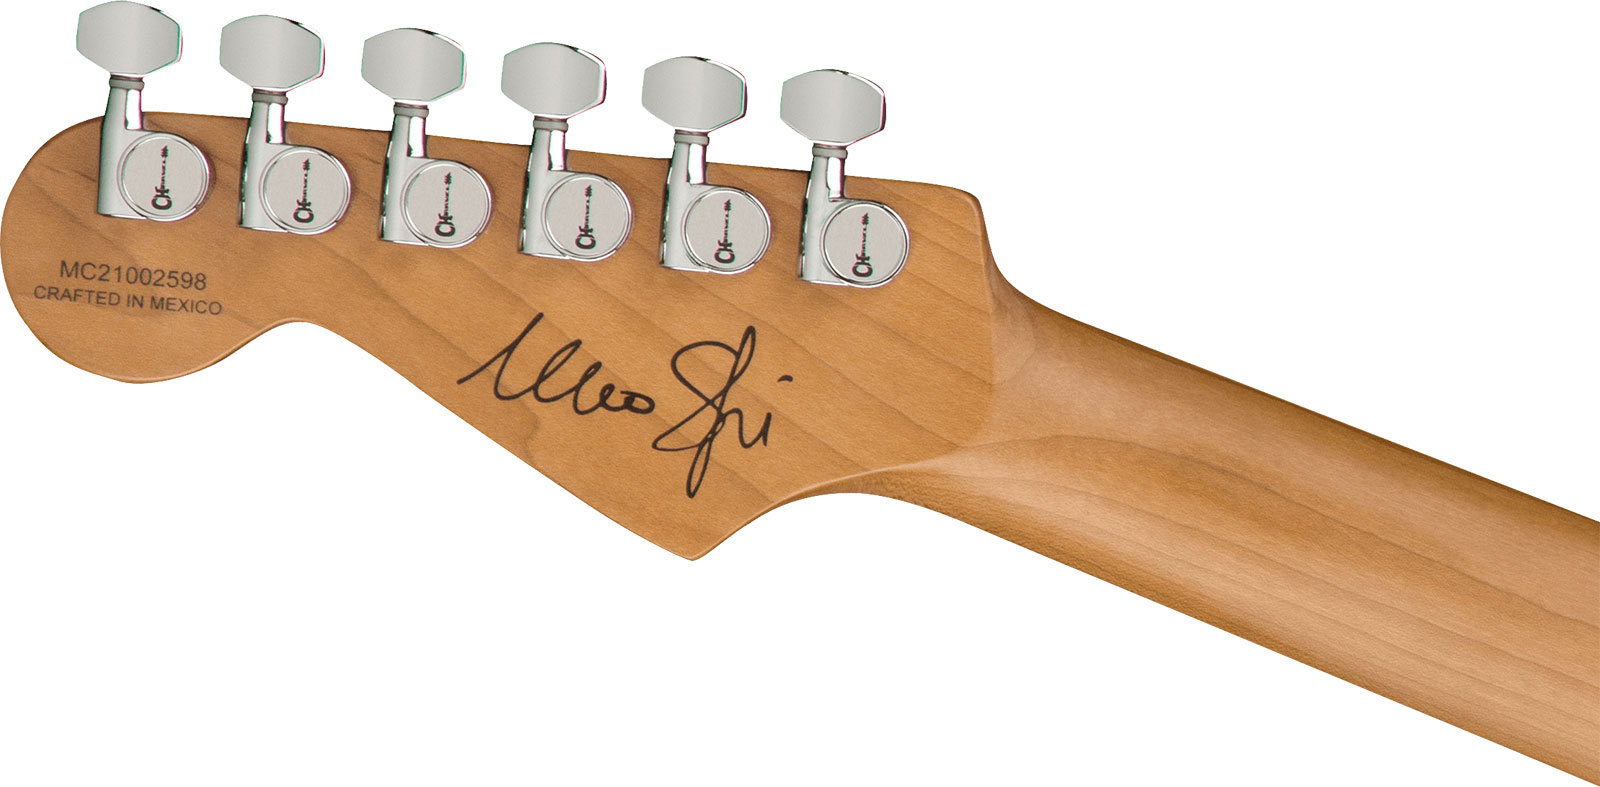 Charvel Marco Sfogli So Cal Style 1 Pro Mod Signature Hss Emg Fr Mn - Transparent Purple Burst - Guitare Électrique Signature - Variation 3